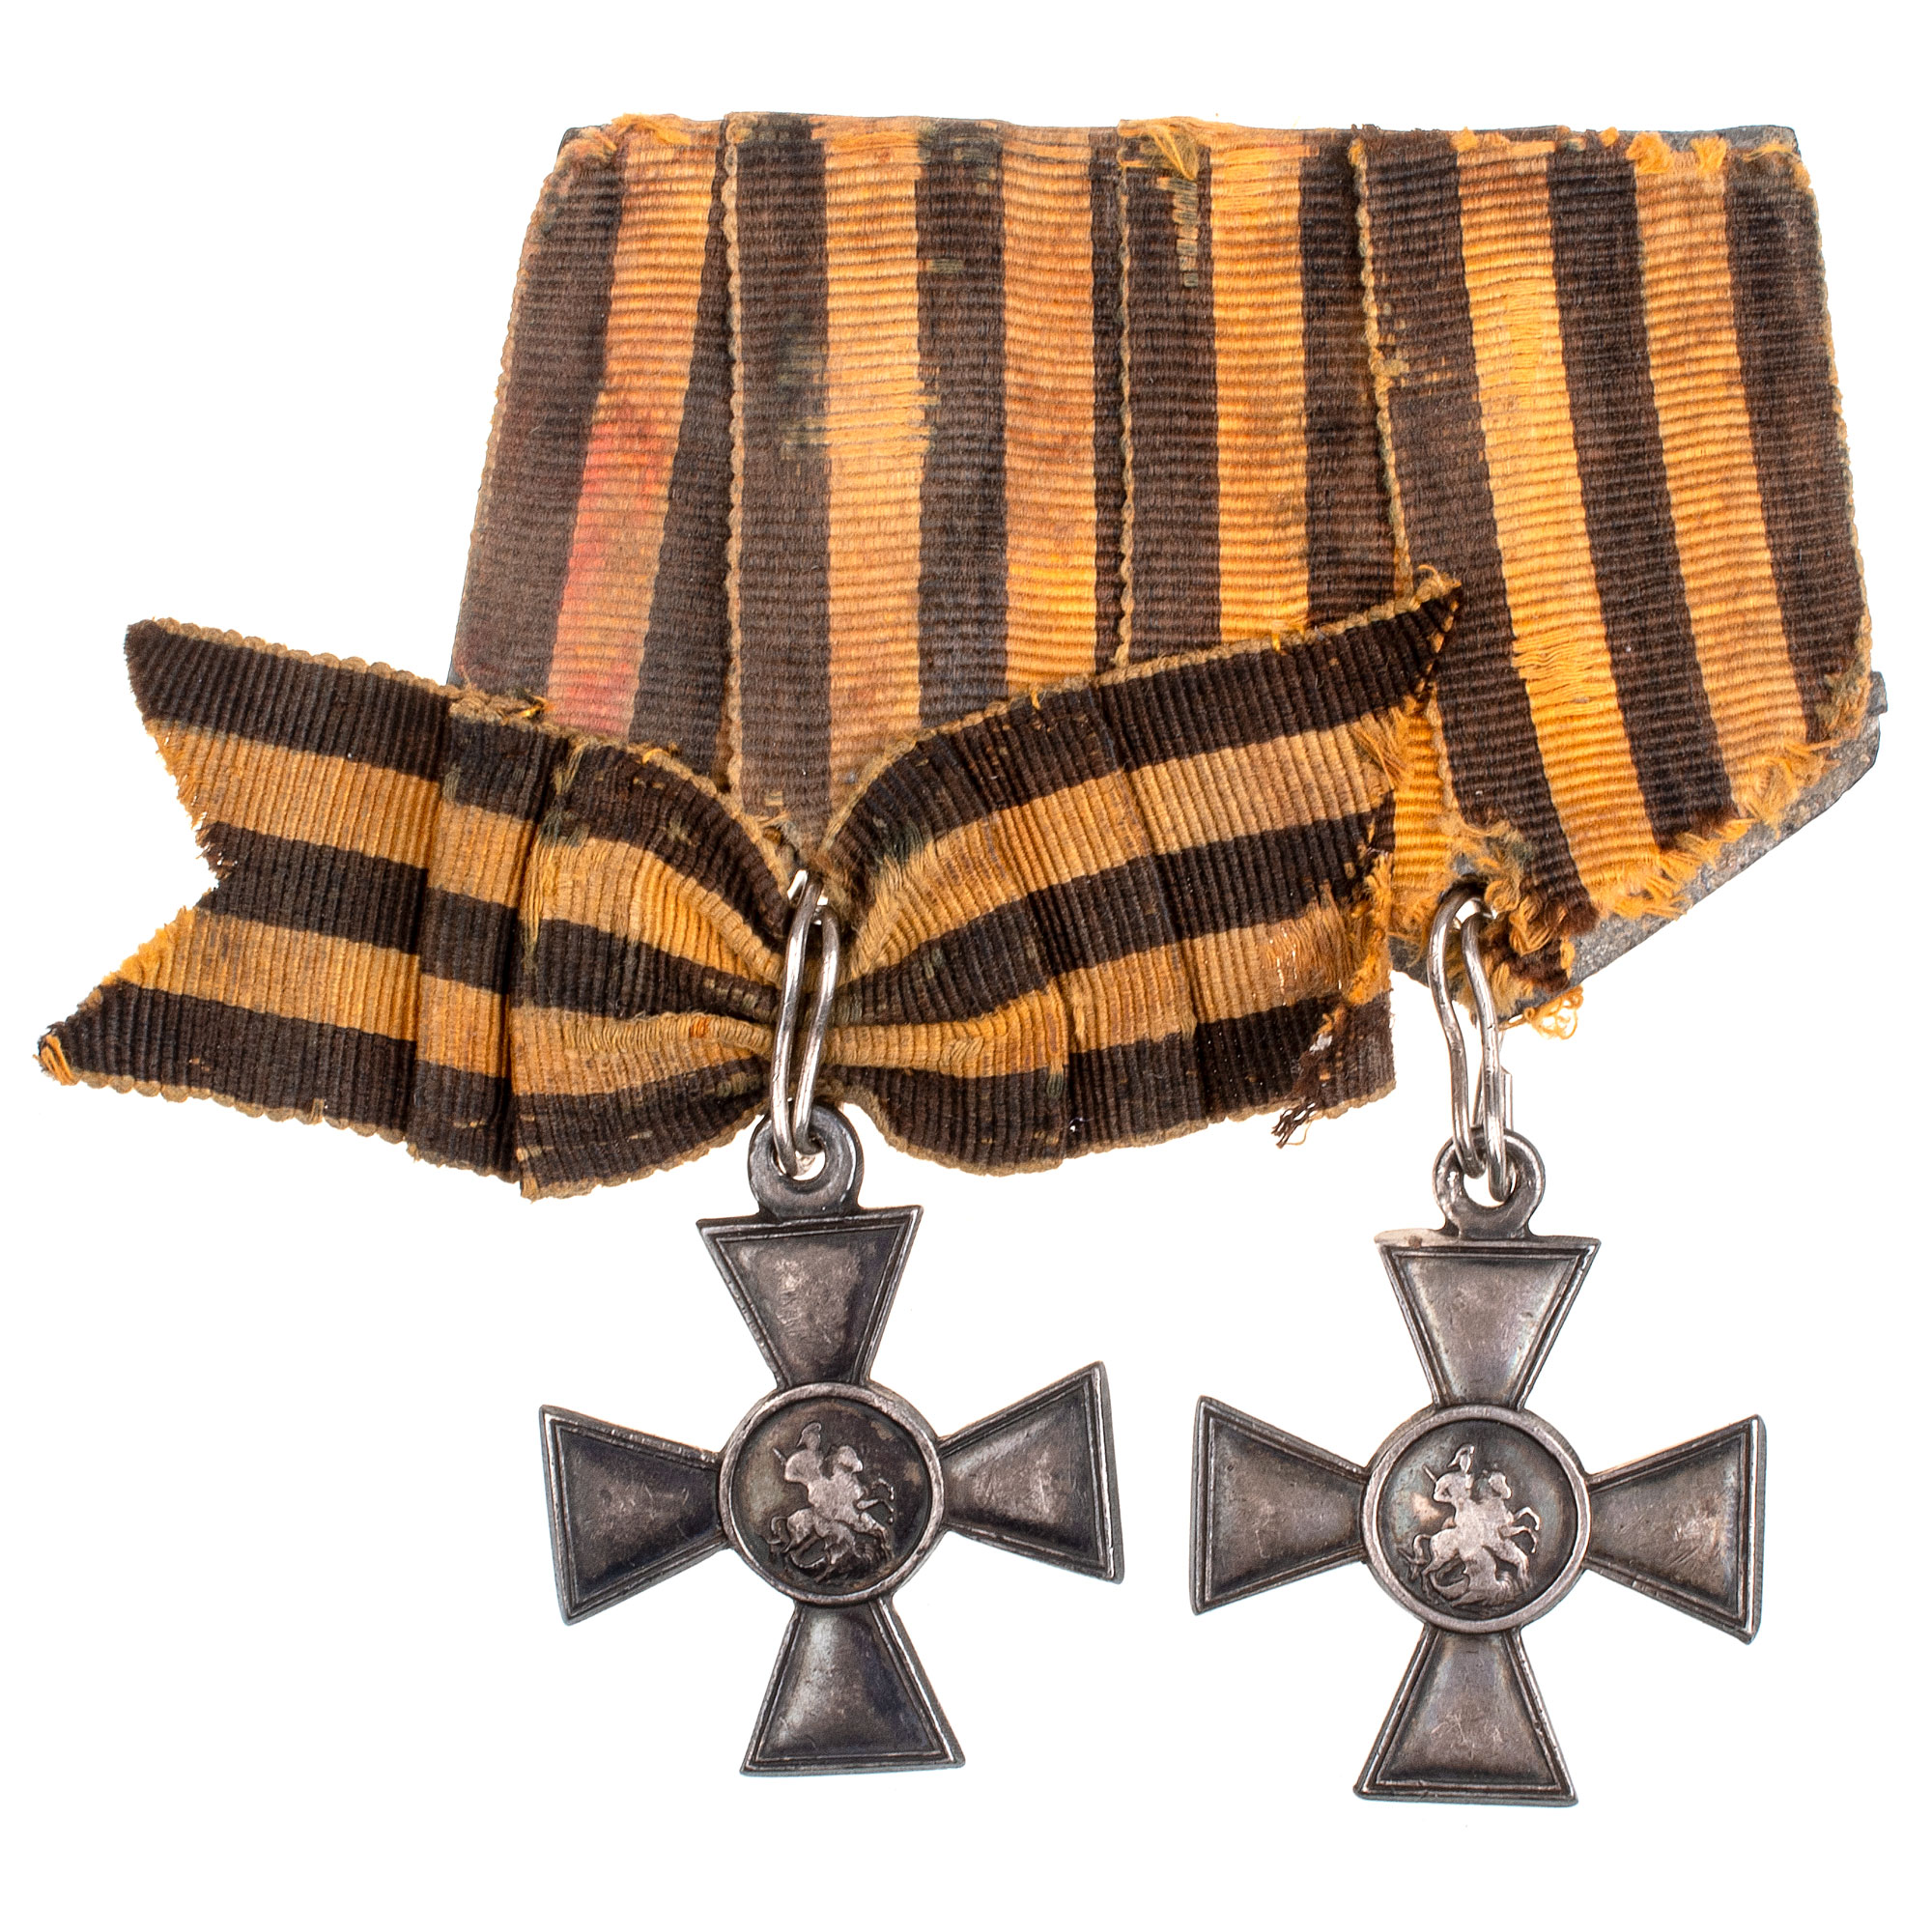 Наградная колодка на два Георгиевских Креста - ГК 3 ст 193.611 и ГК 4 ст 776.316 (188 пехотный Карсский полк).